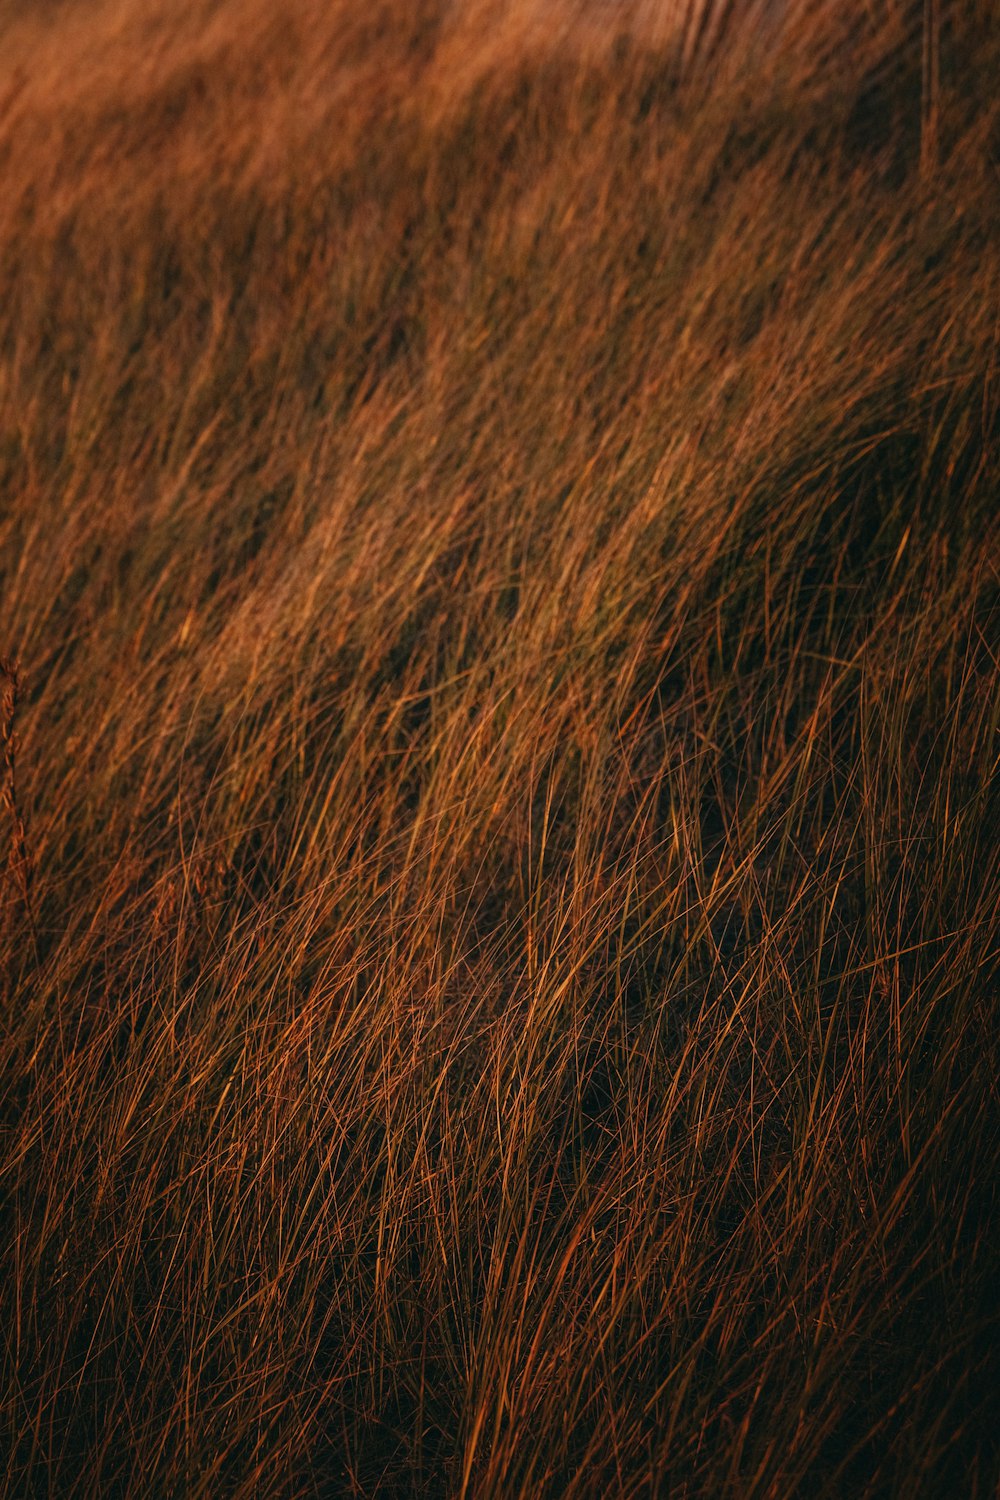 a tall brown grass